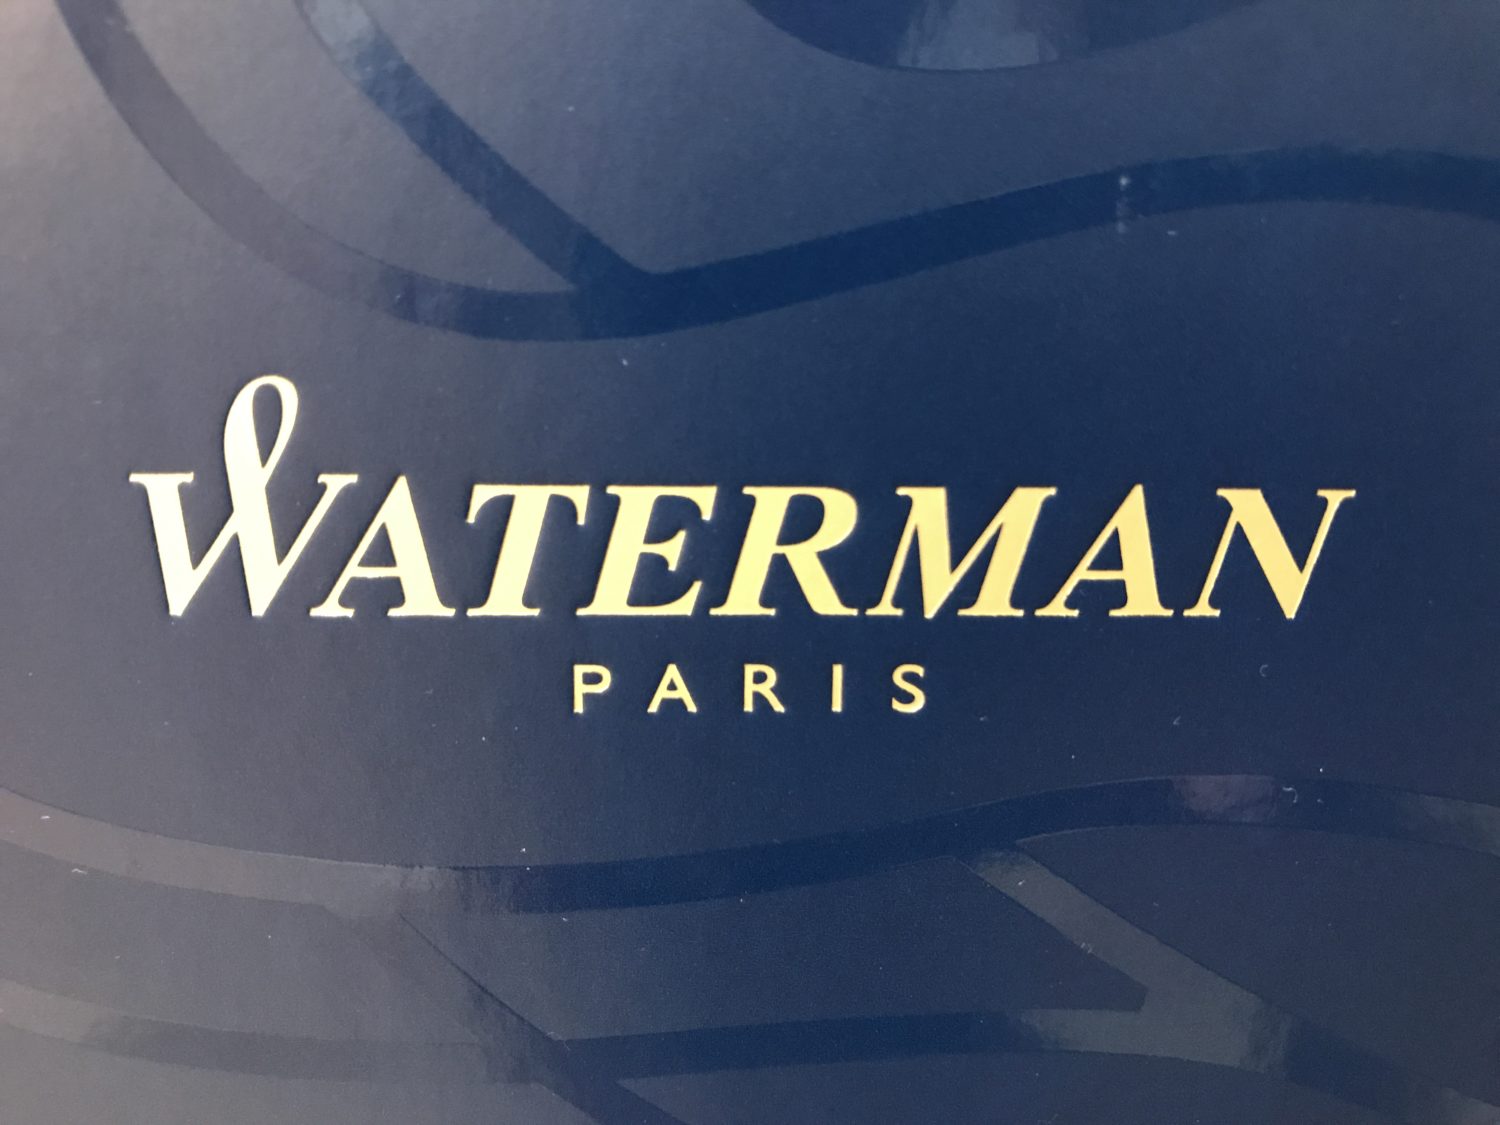 WATERMAN（ウォーターマン）の万年筆を買ったら、販売員の方からいろいろなことを教えてもらった。